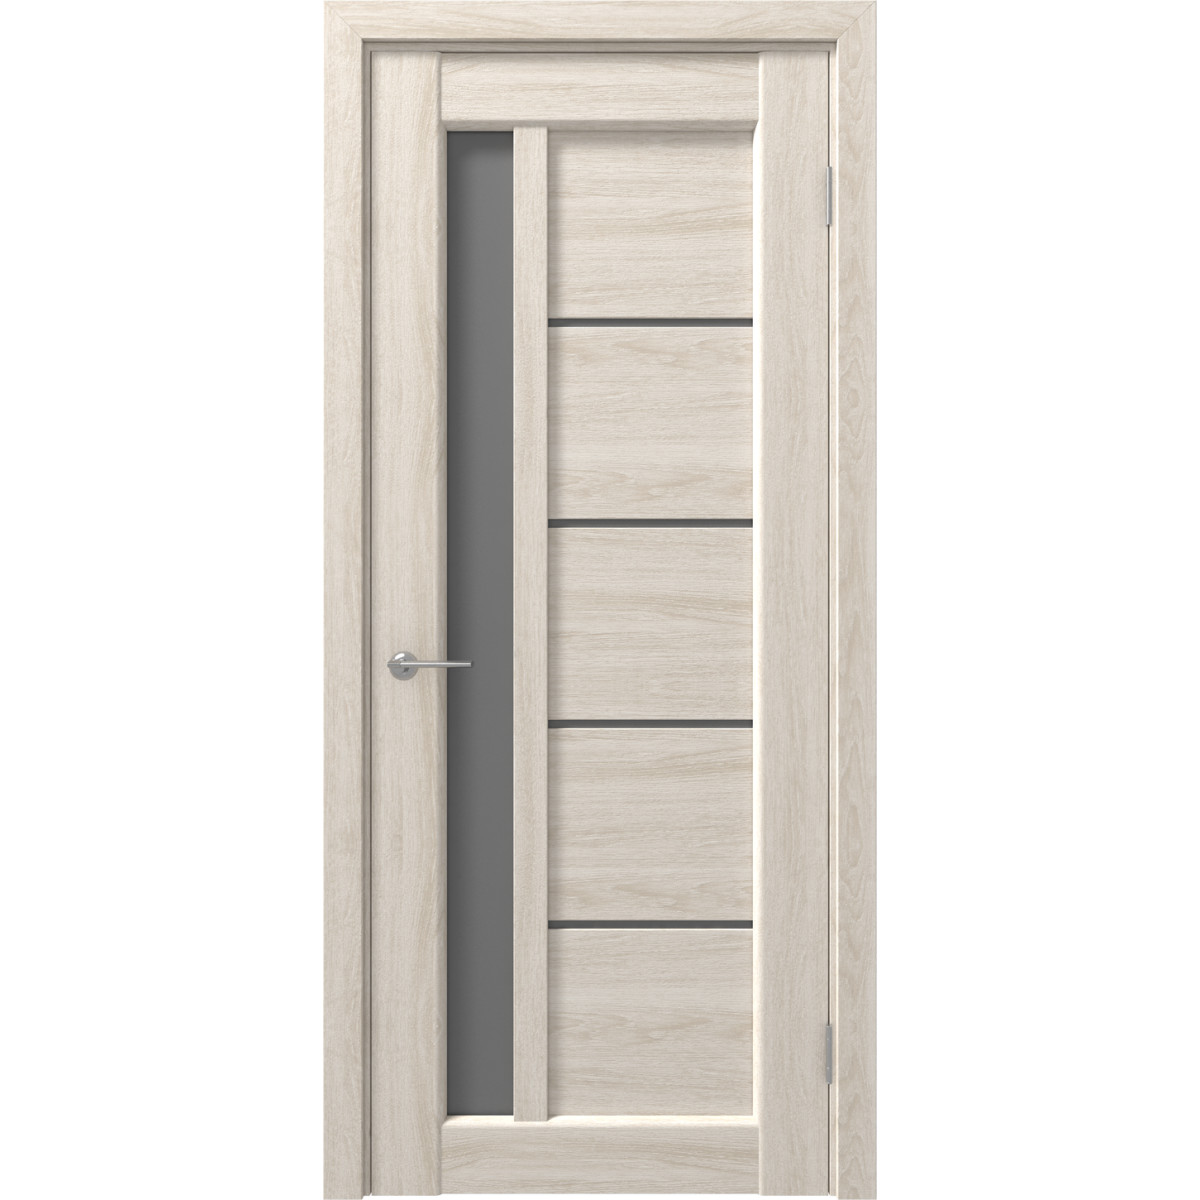 Дверь межкомнатная остеклённая с замком и петлями в комплекте Artens Брио 60x200 см ПВХ цвет дуб филадельфия